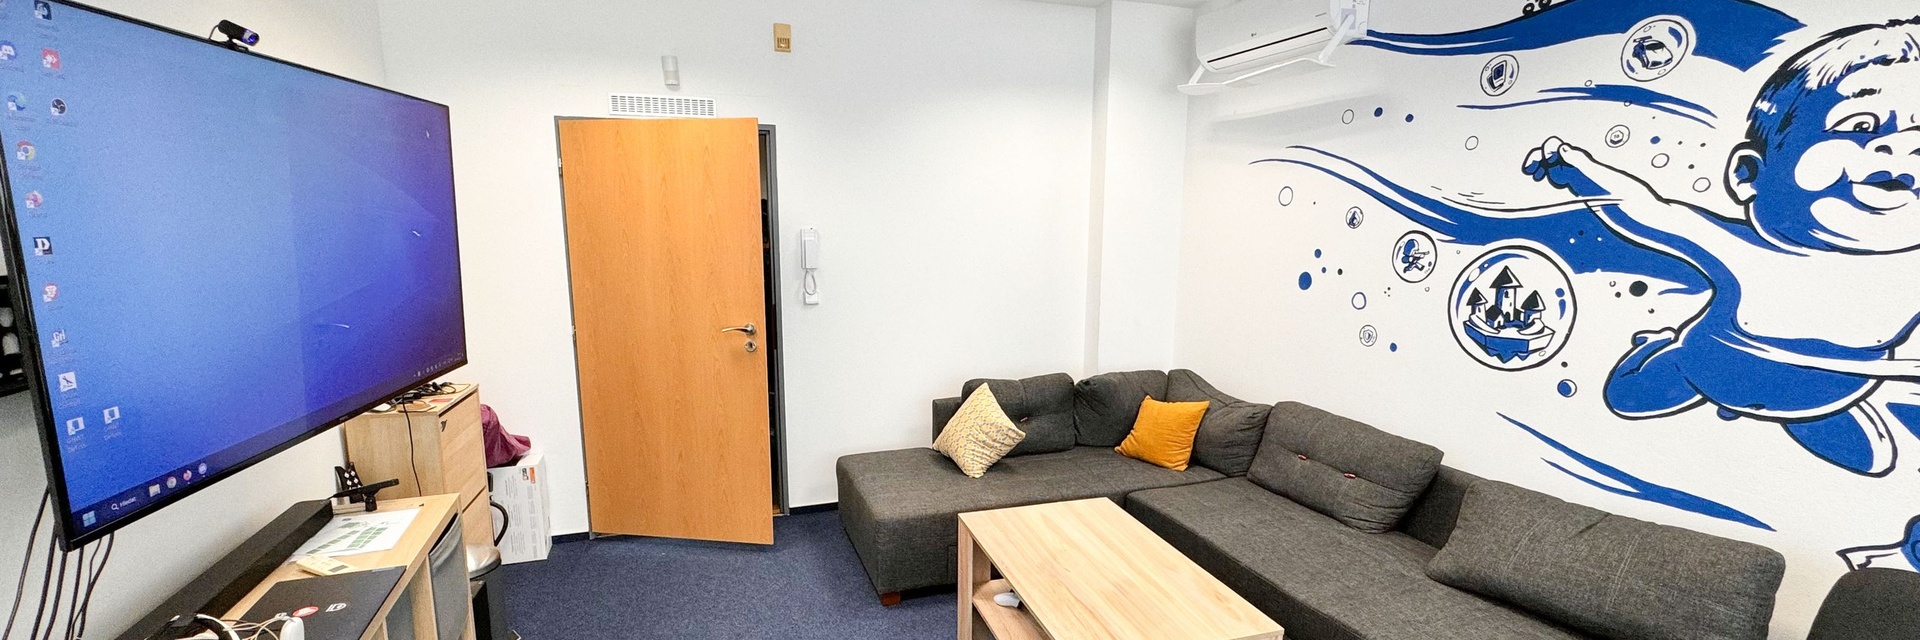 Pronájem kancelářského uzavřeného patra 138 m² ve 4.NP, ulice Křížová, Brno